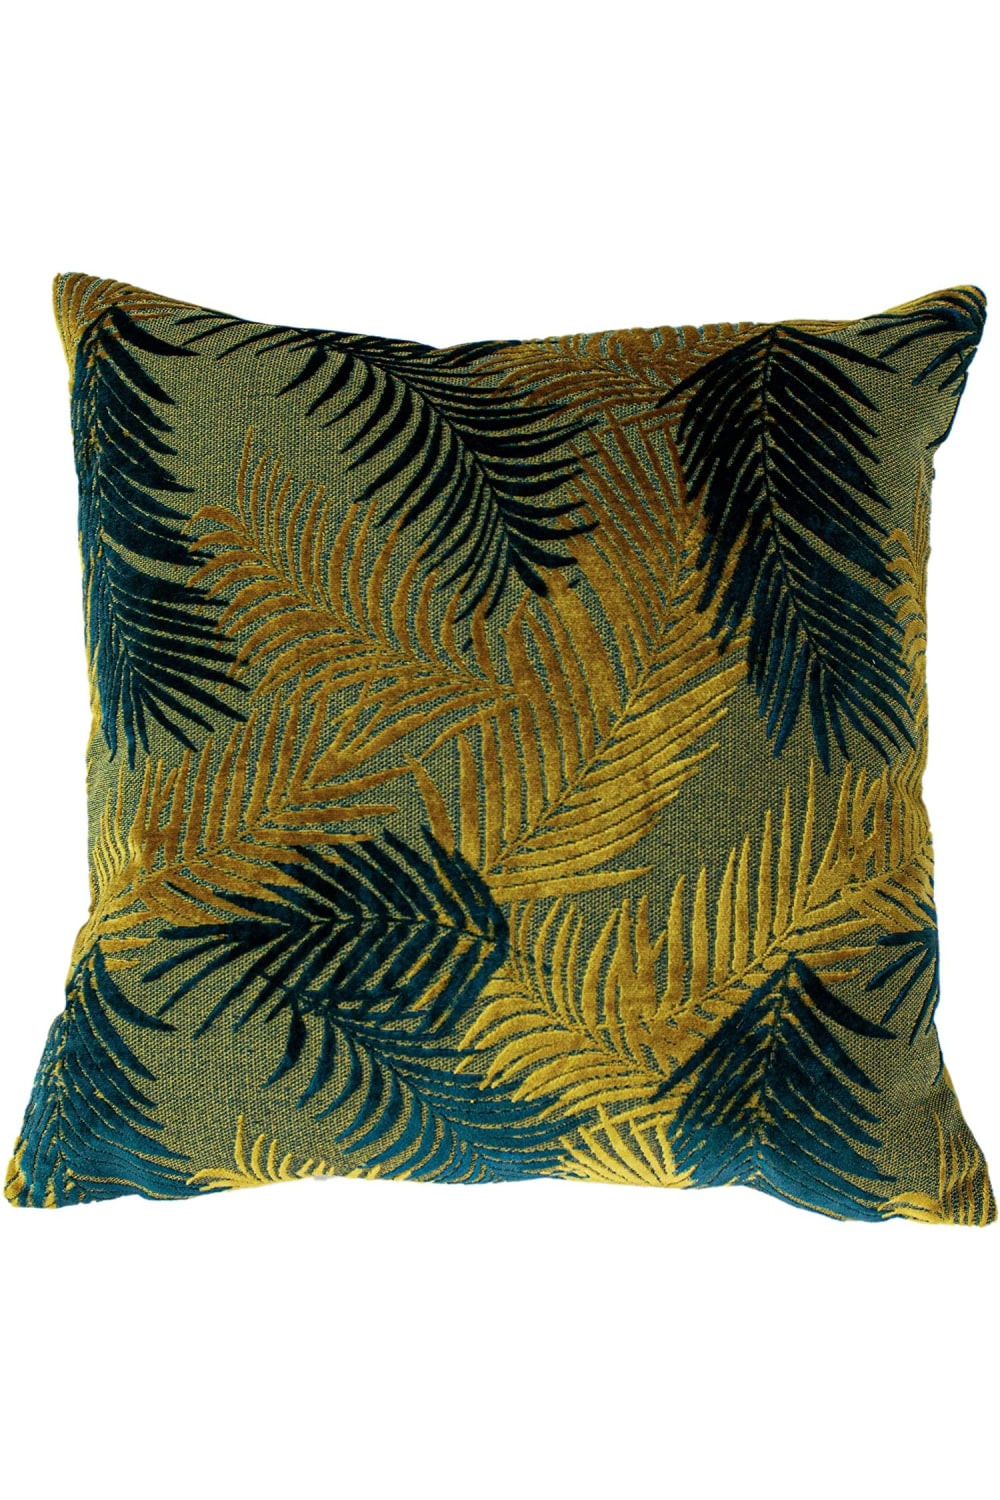 Paoletti Palm Grove Cushion Cover